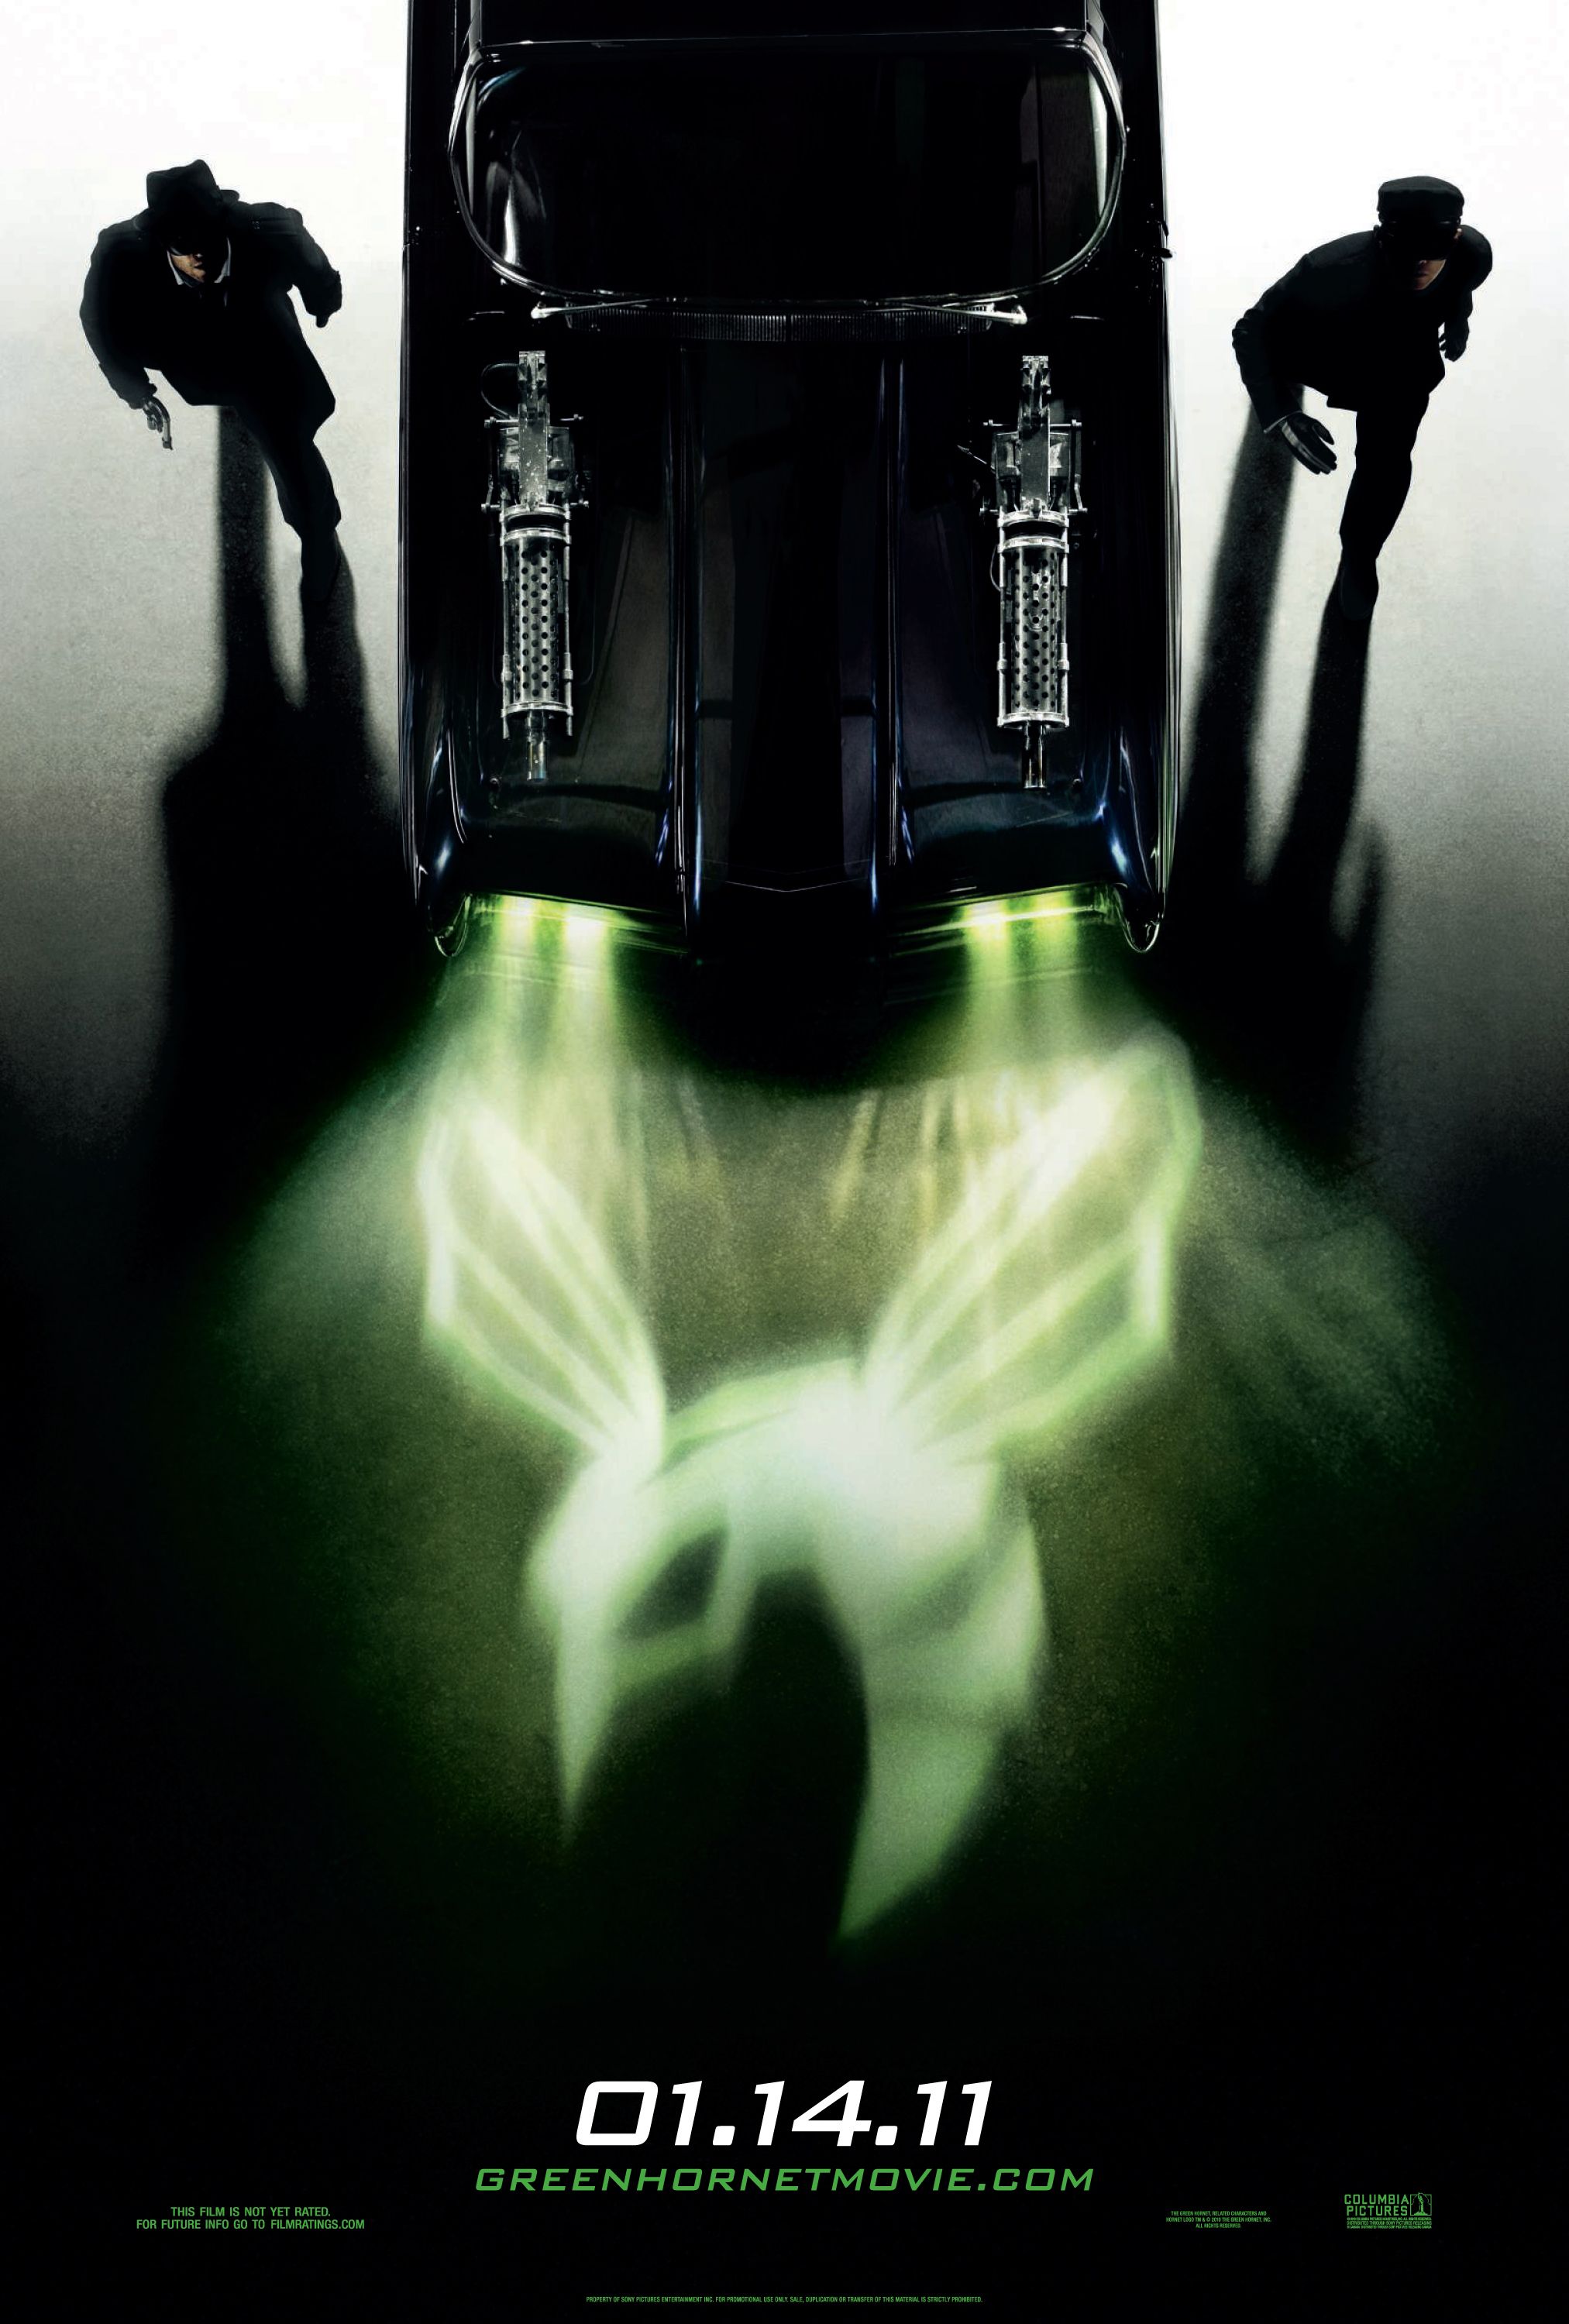 The Green Hornet Poster